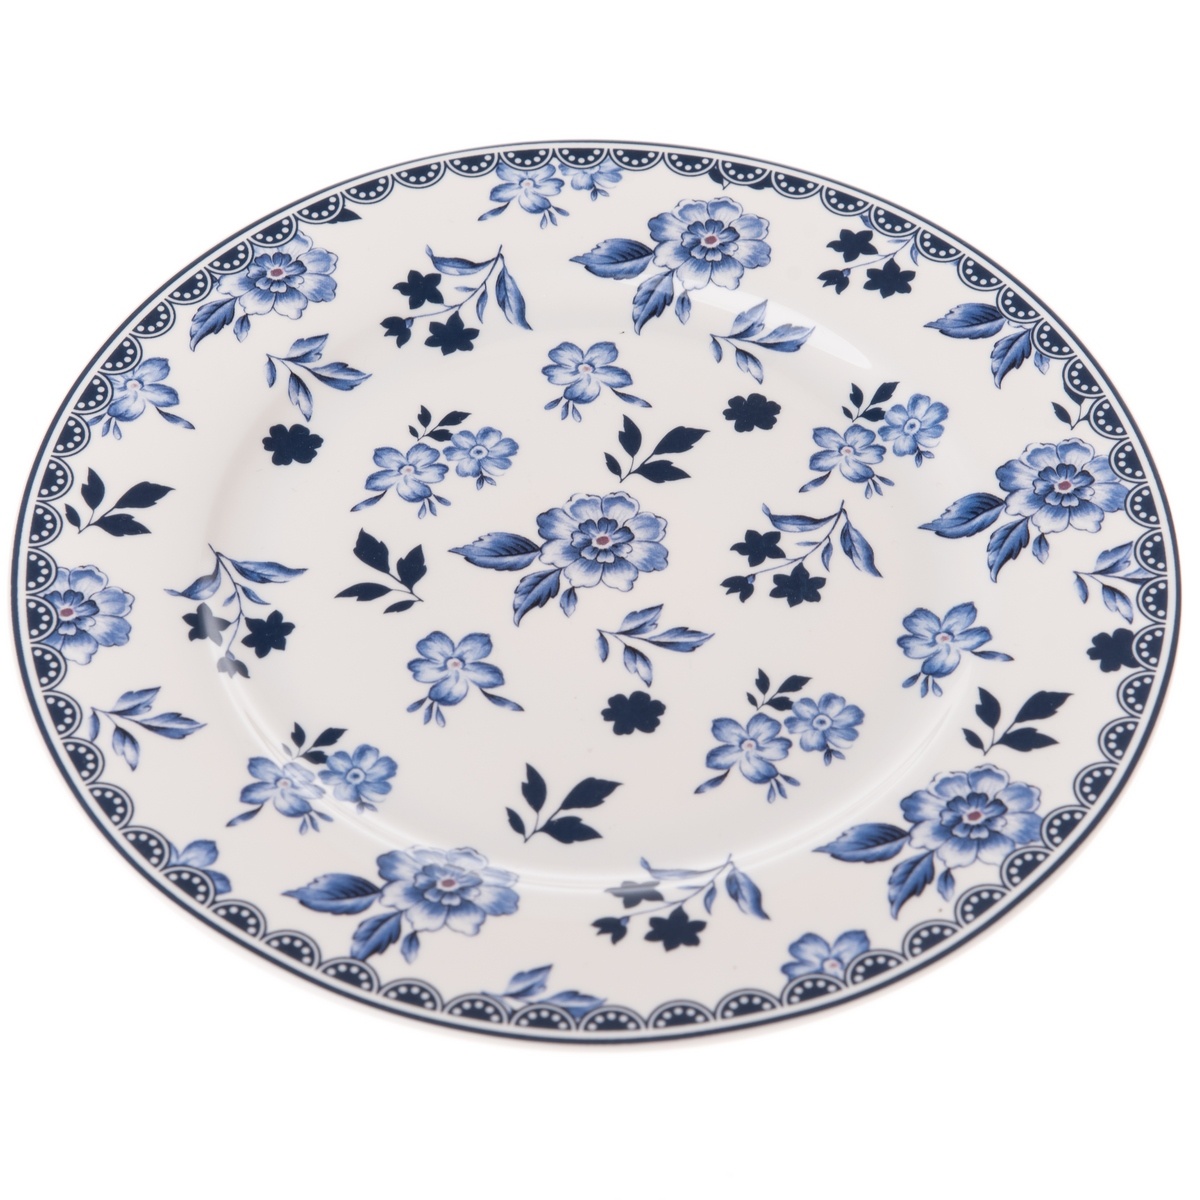 Porcelánový tanier Floral, 19,5 cm